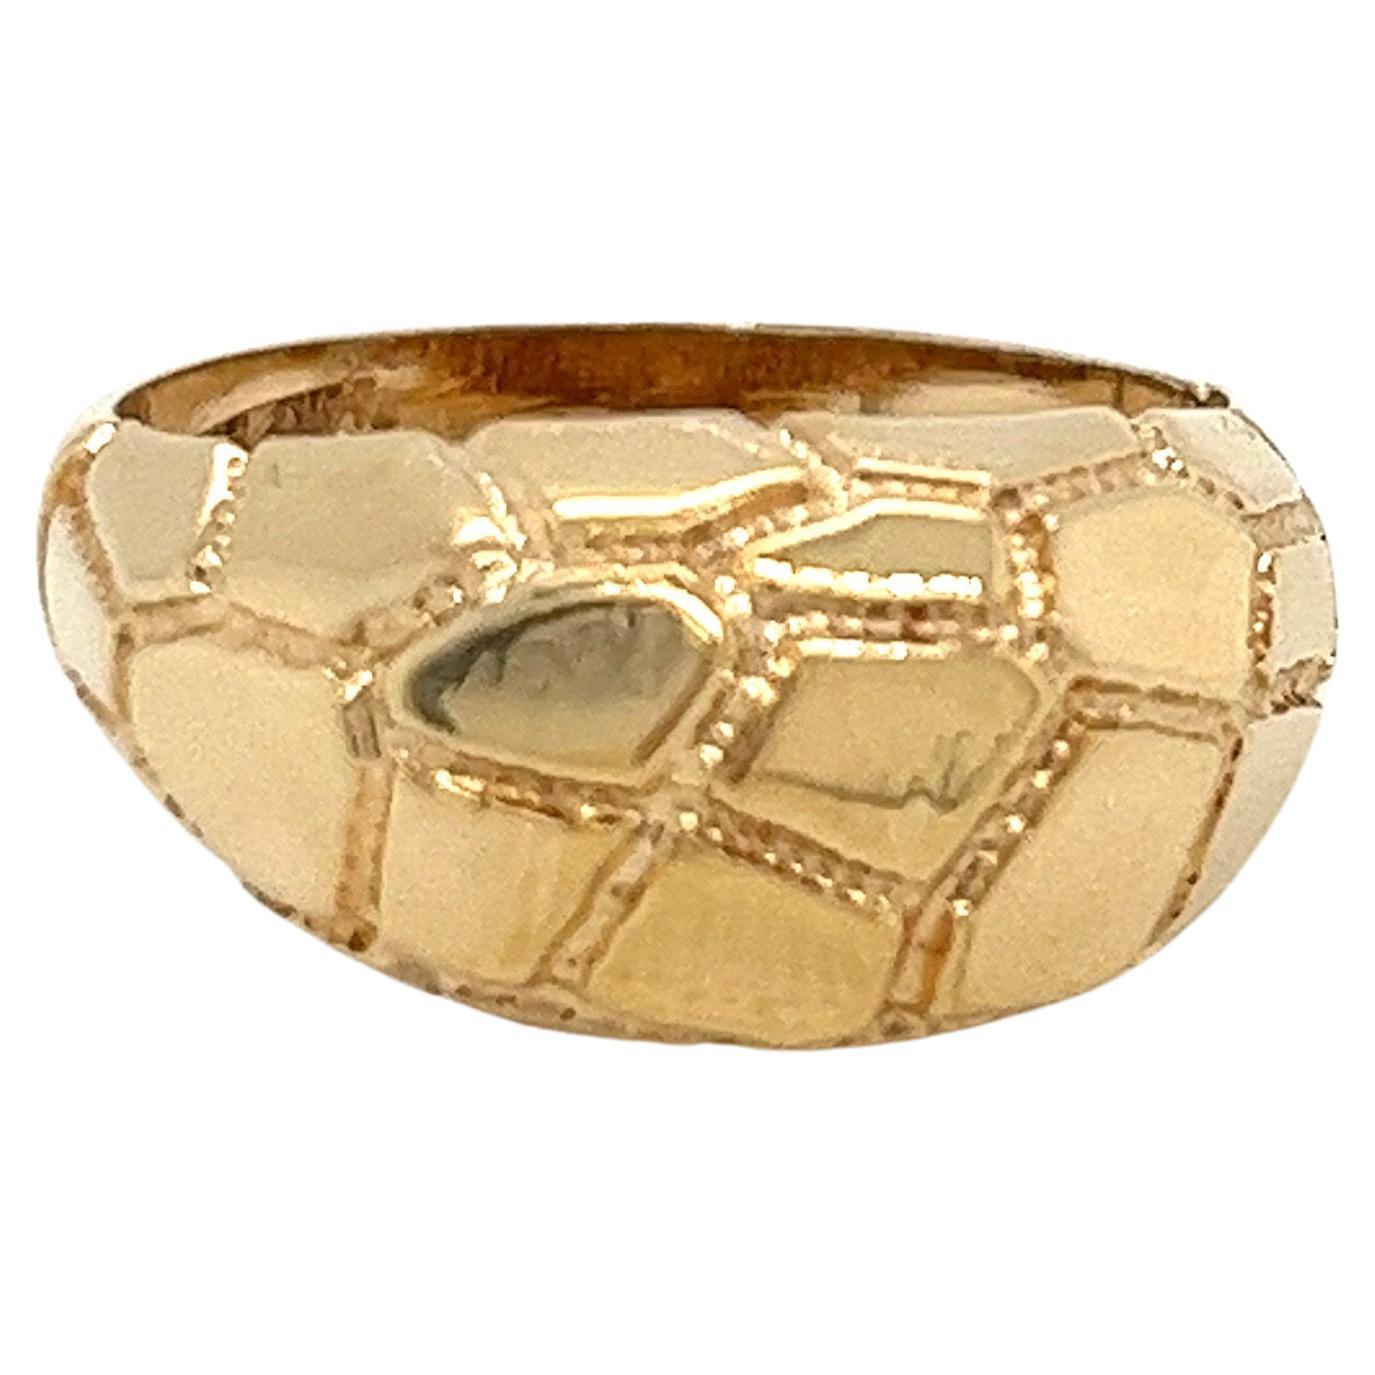 Vintage 1980's 14k Gelbgold Schildkröte Shell Design Kuppel Erklärung Ring. Der Ring misst oben 9 mm und verjüngt sich an der Seite auf 5 mm. Die Höhe der Kuppel über dem Finger beträgt 5 mm. Die Breite des Rings an der Unterseite beträgt 3 mm. Die